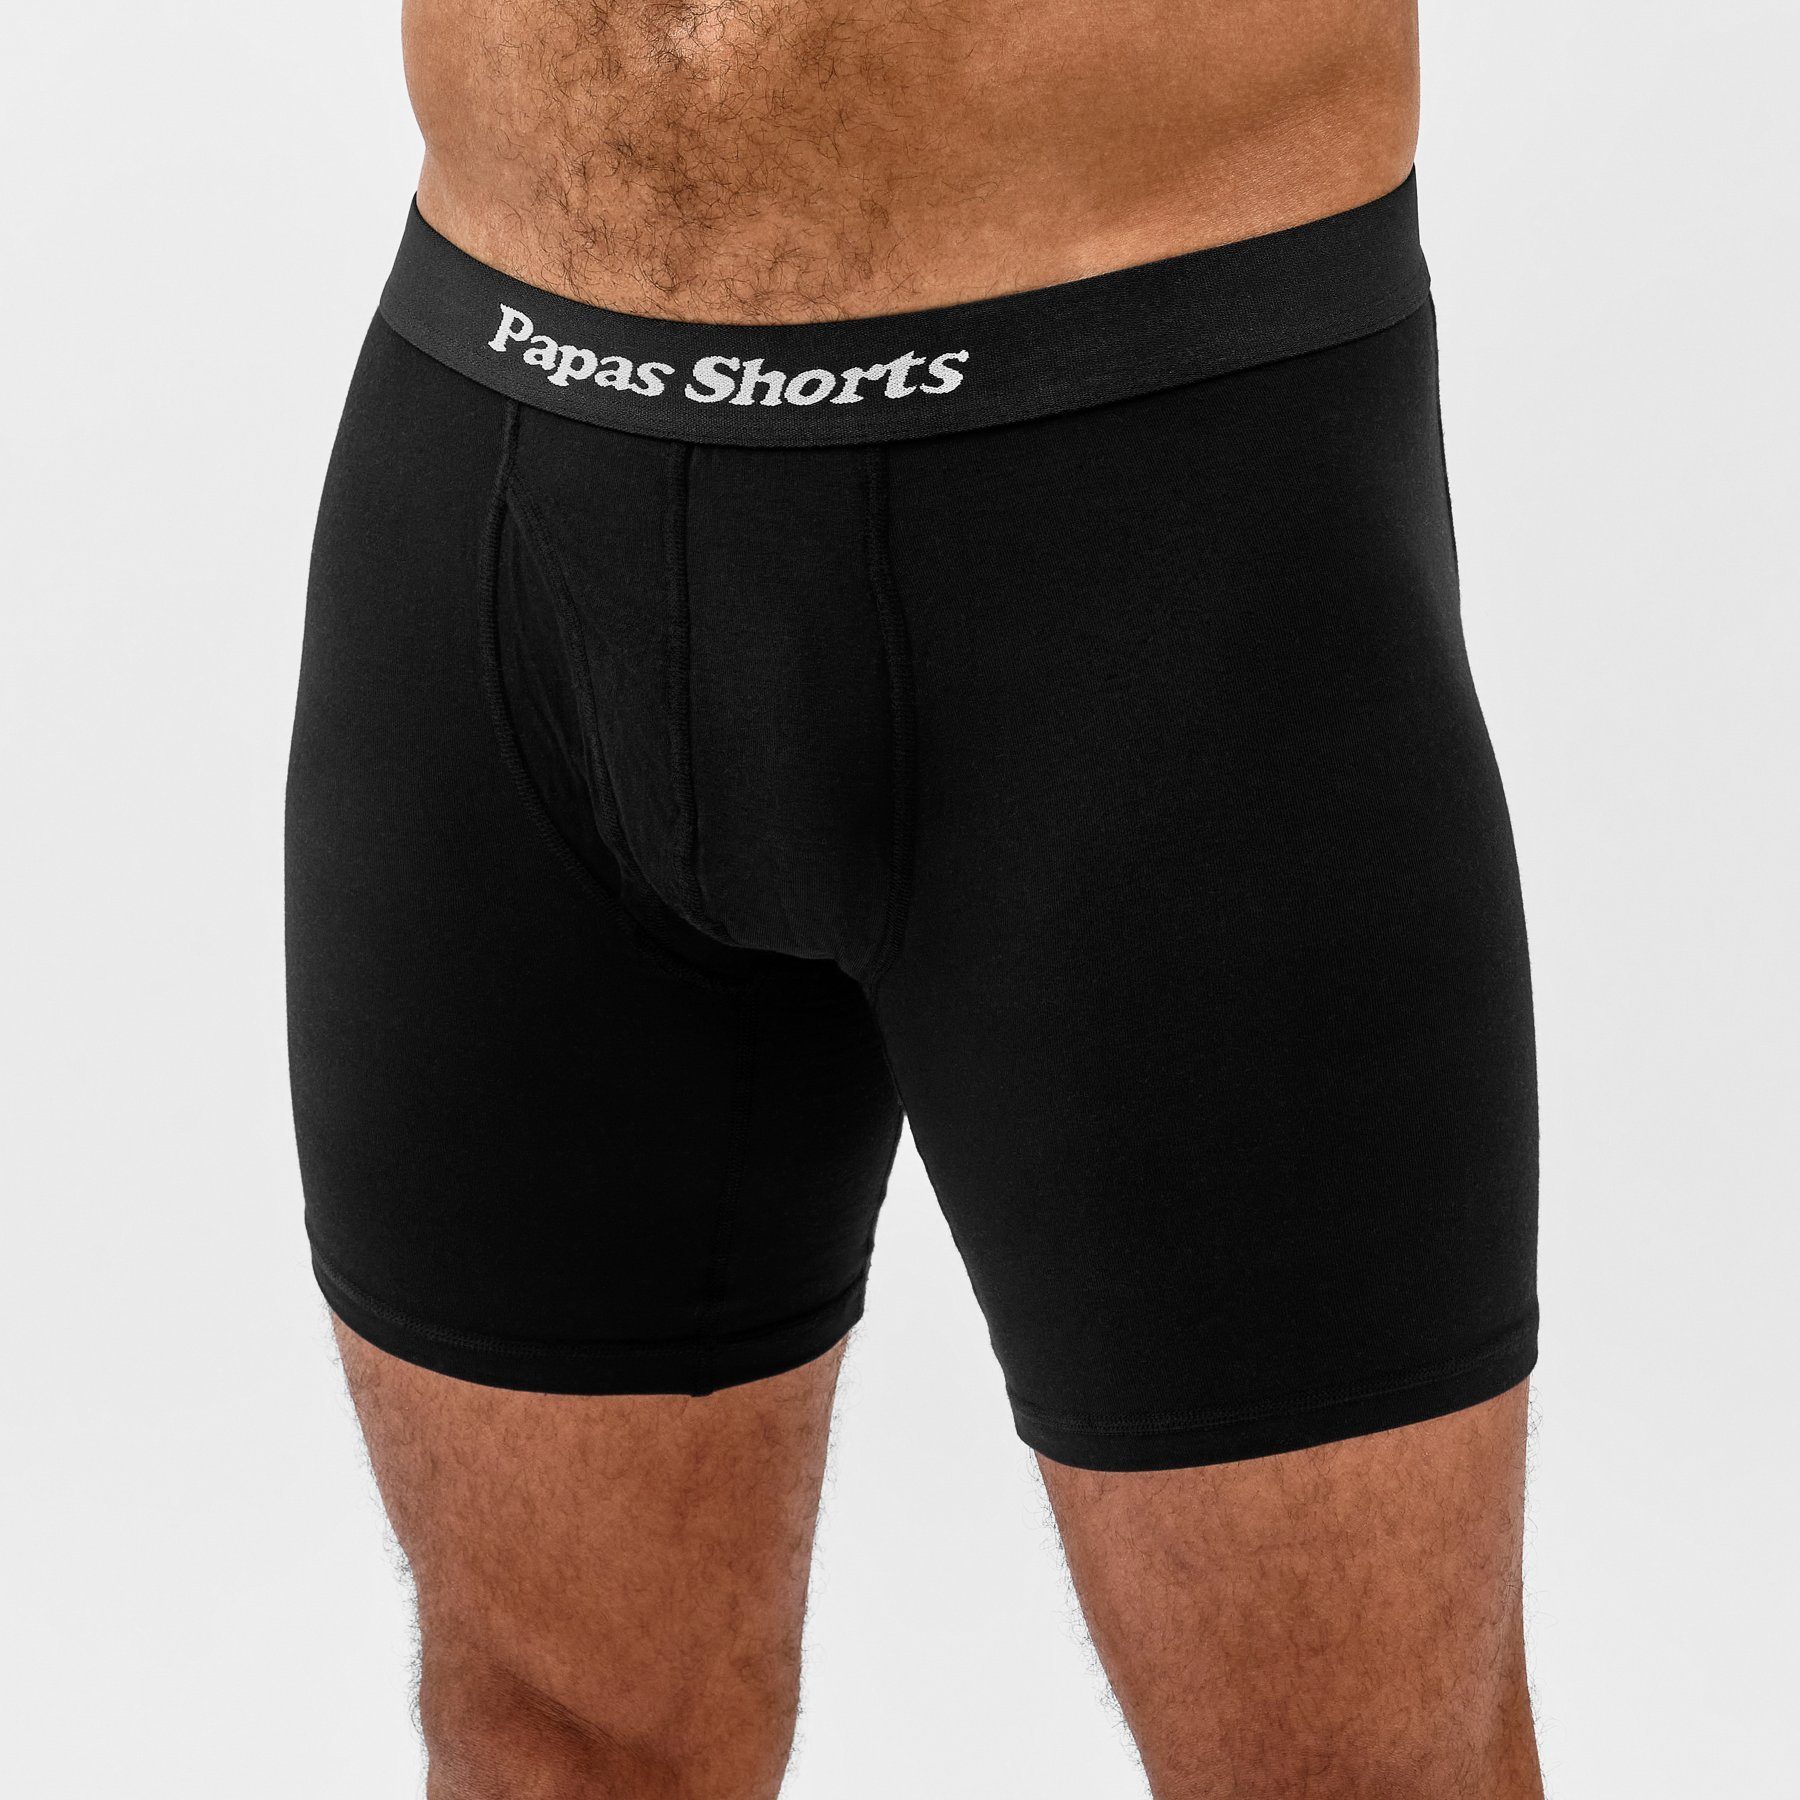 Beinlänge weichem im Schwarze Buxe Schritt gegen Shorts mit Boxershorts extra Zwicken aus Modal Papas 3er-Pack) (Packung,